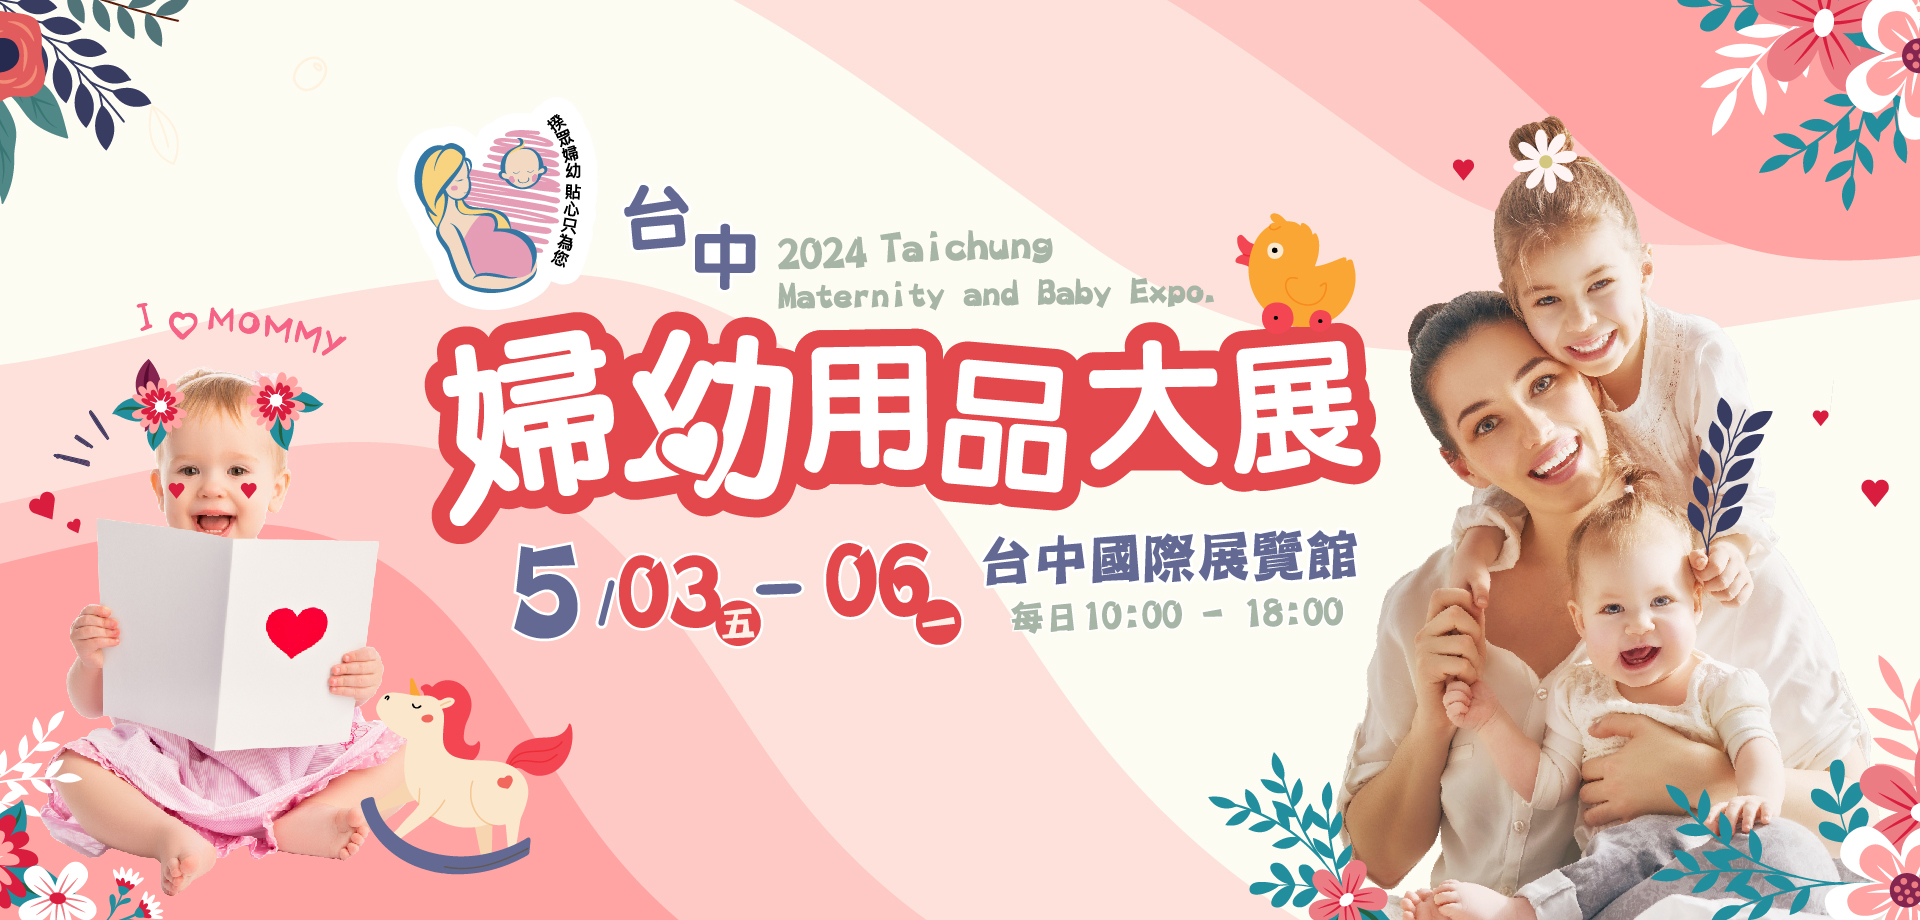 台中國際婦幼用品大展